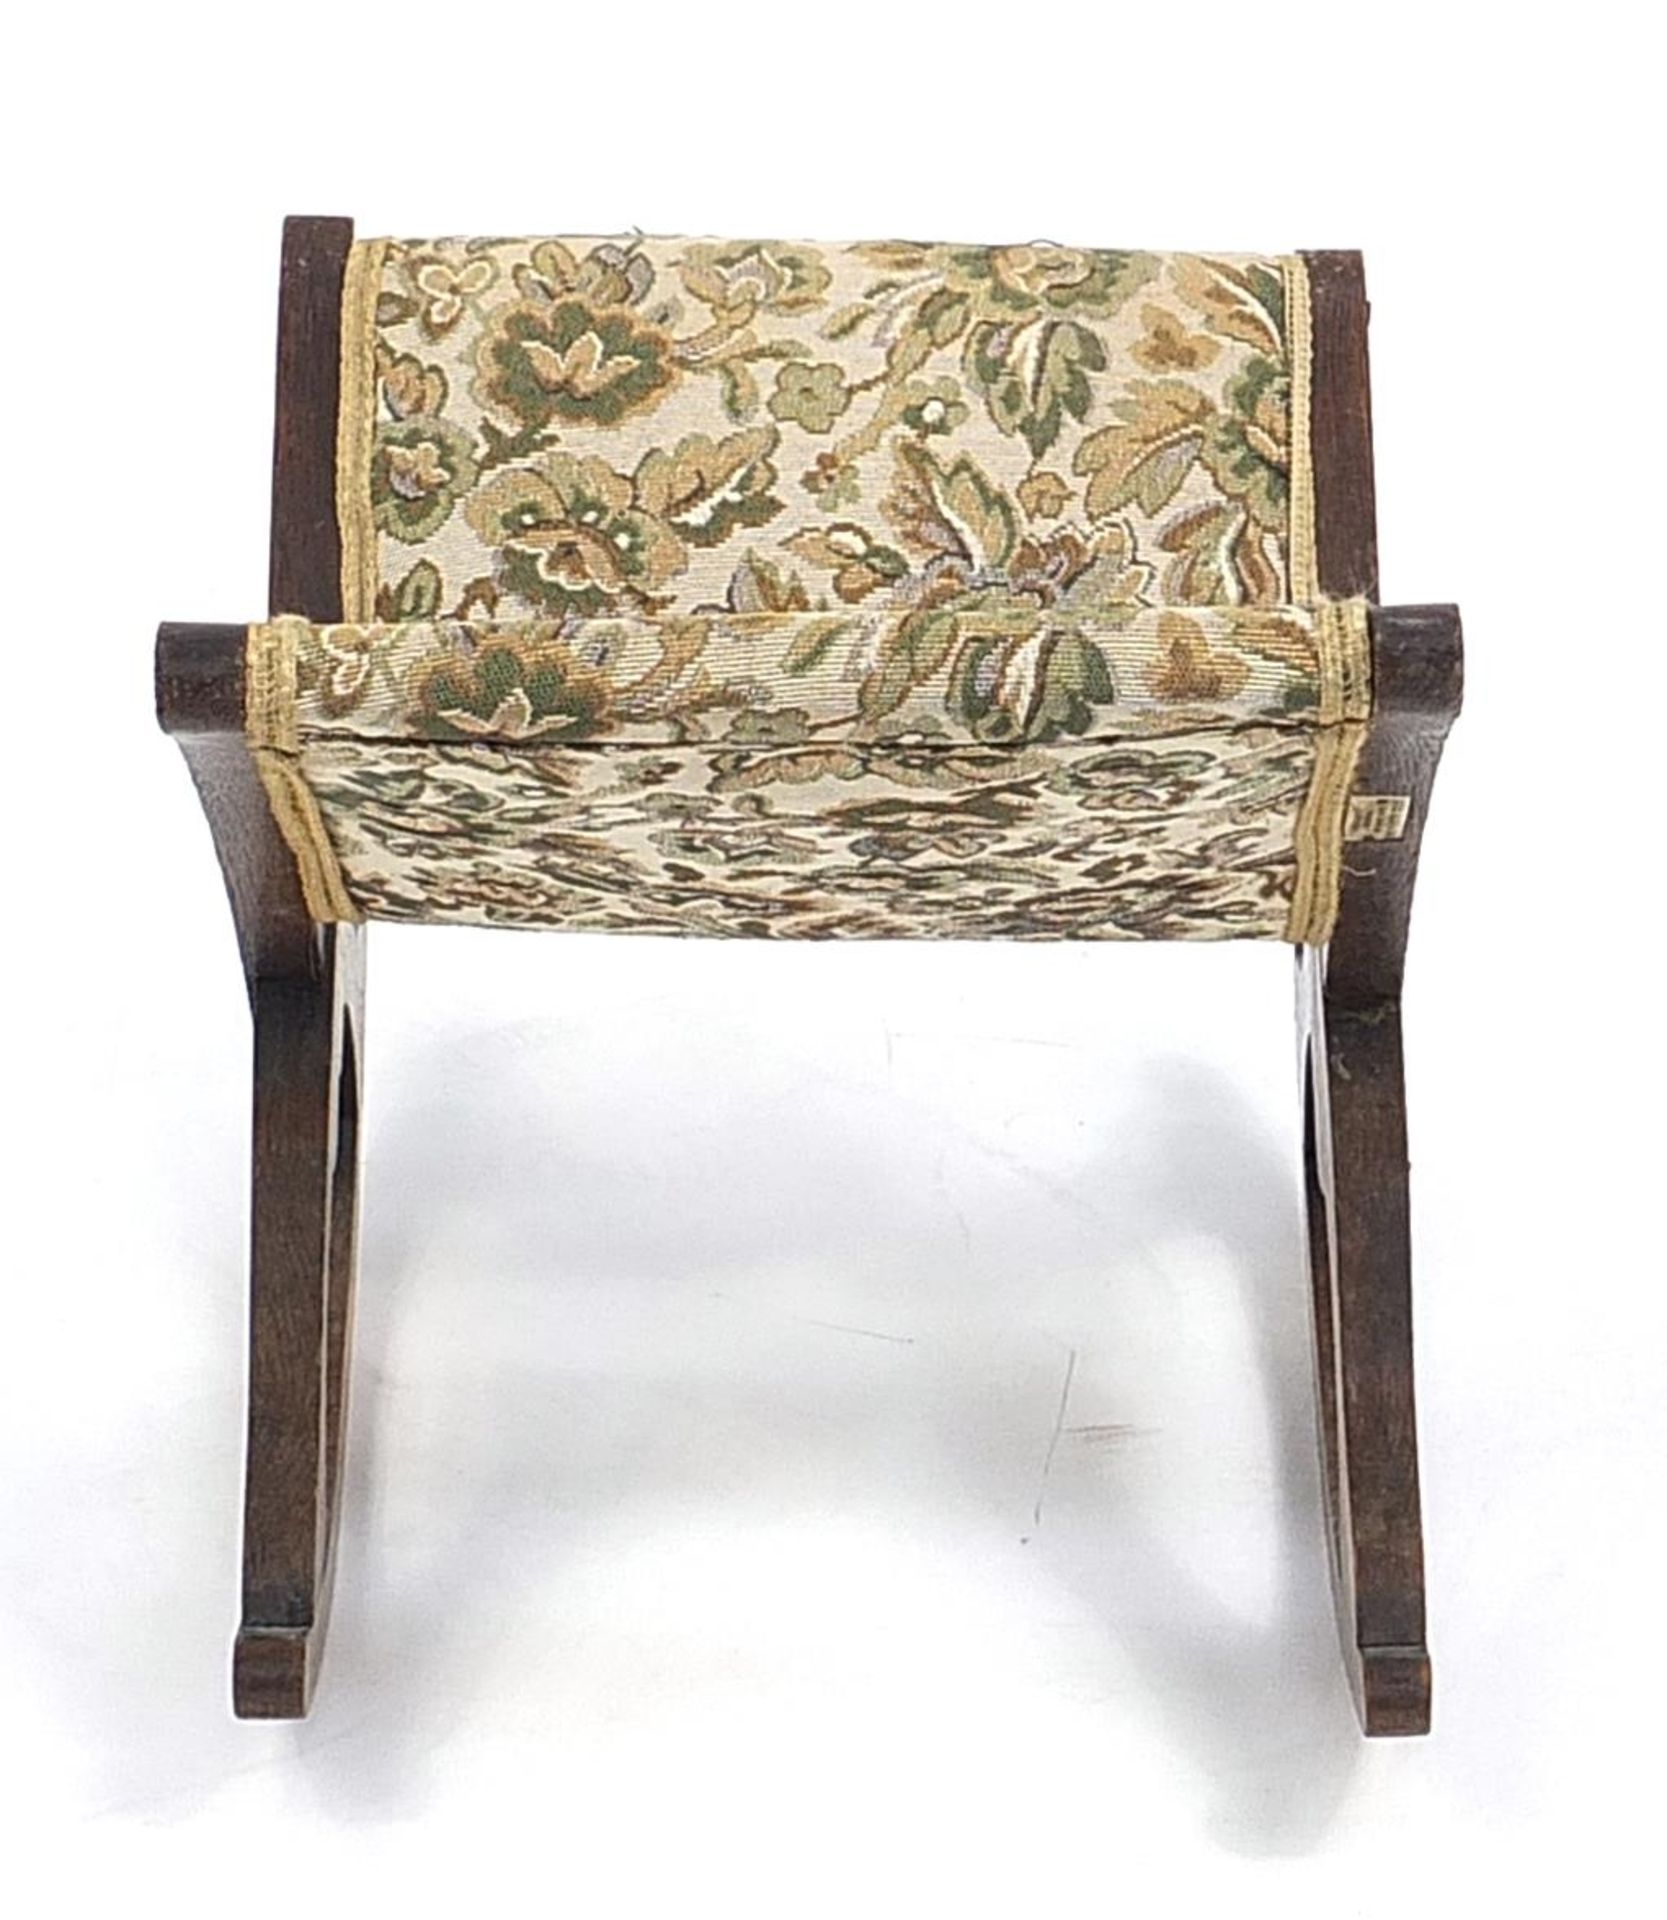 Oak floral upholstered rocking footstool, 60cm high - Image 3 of 4